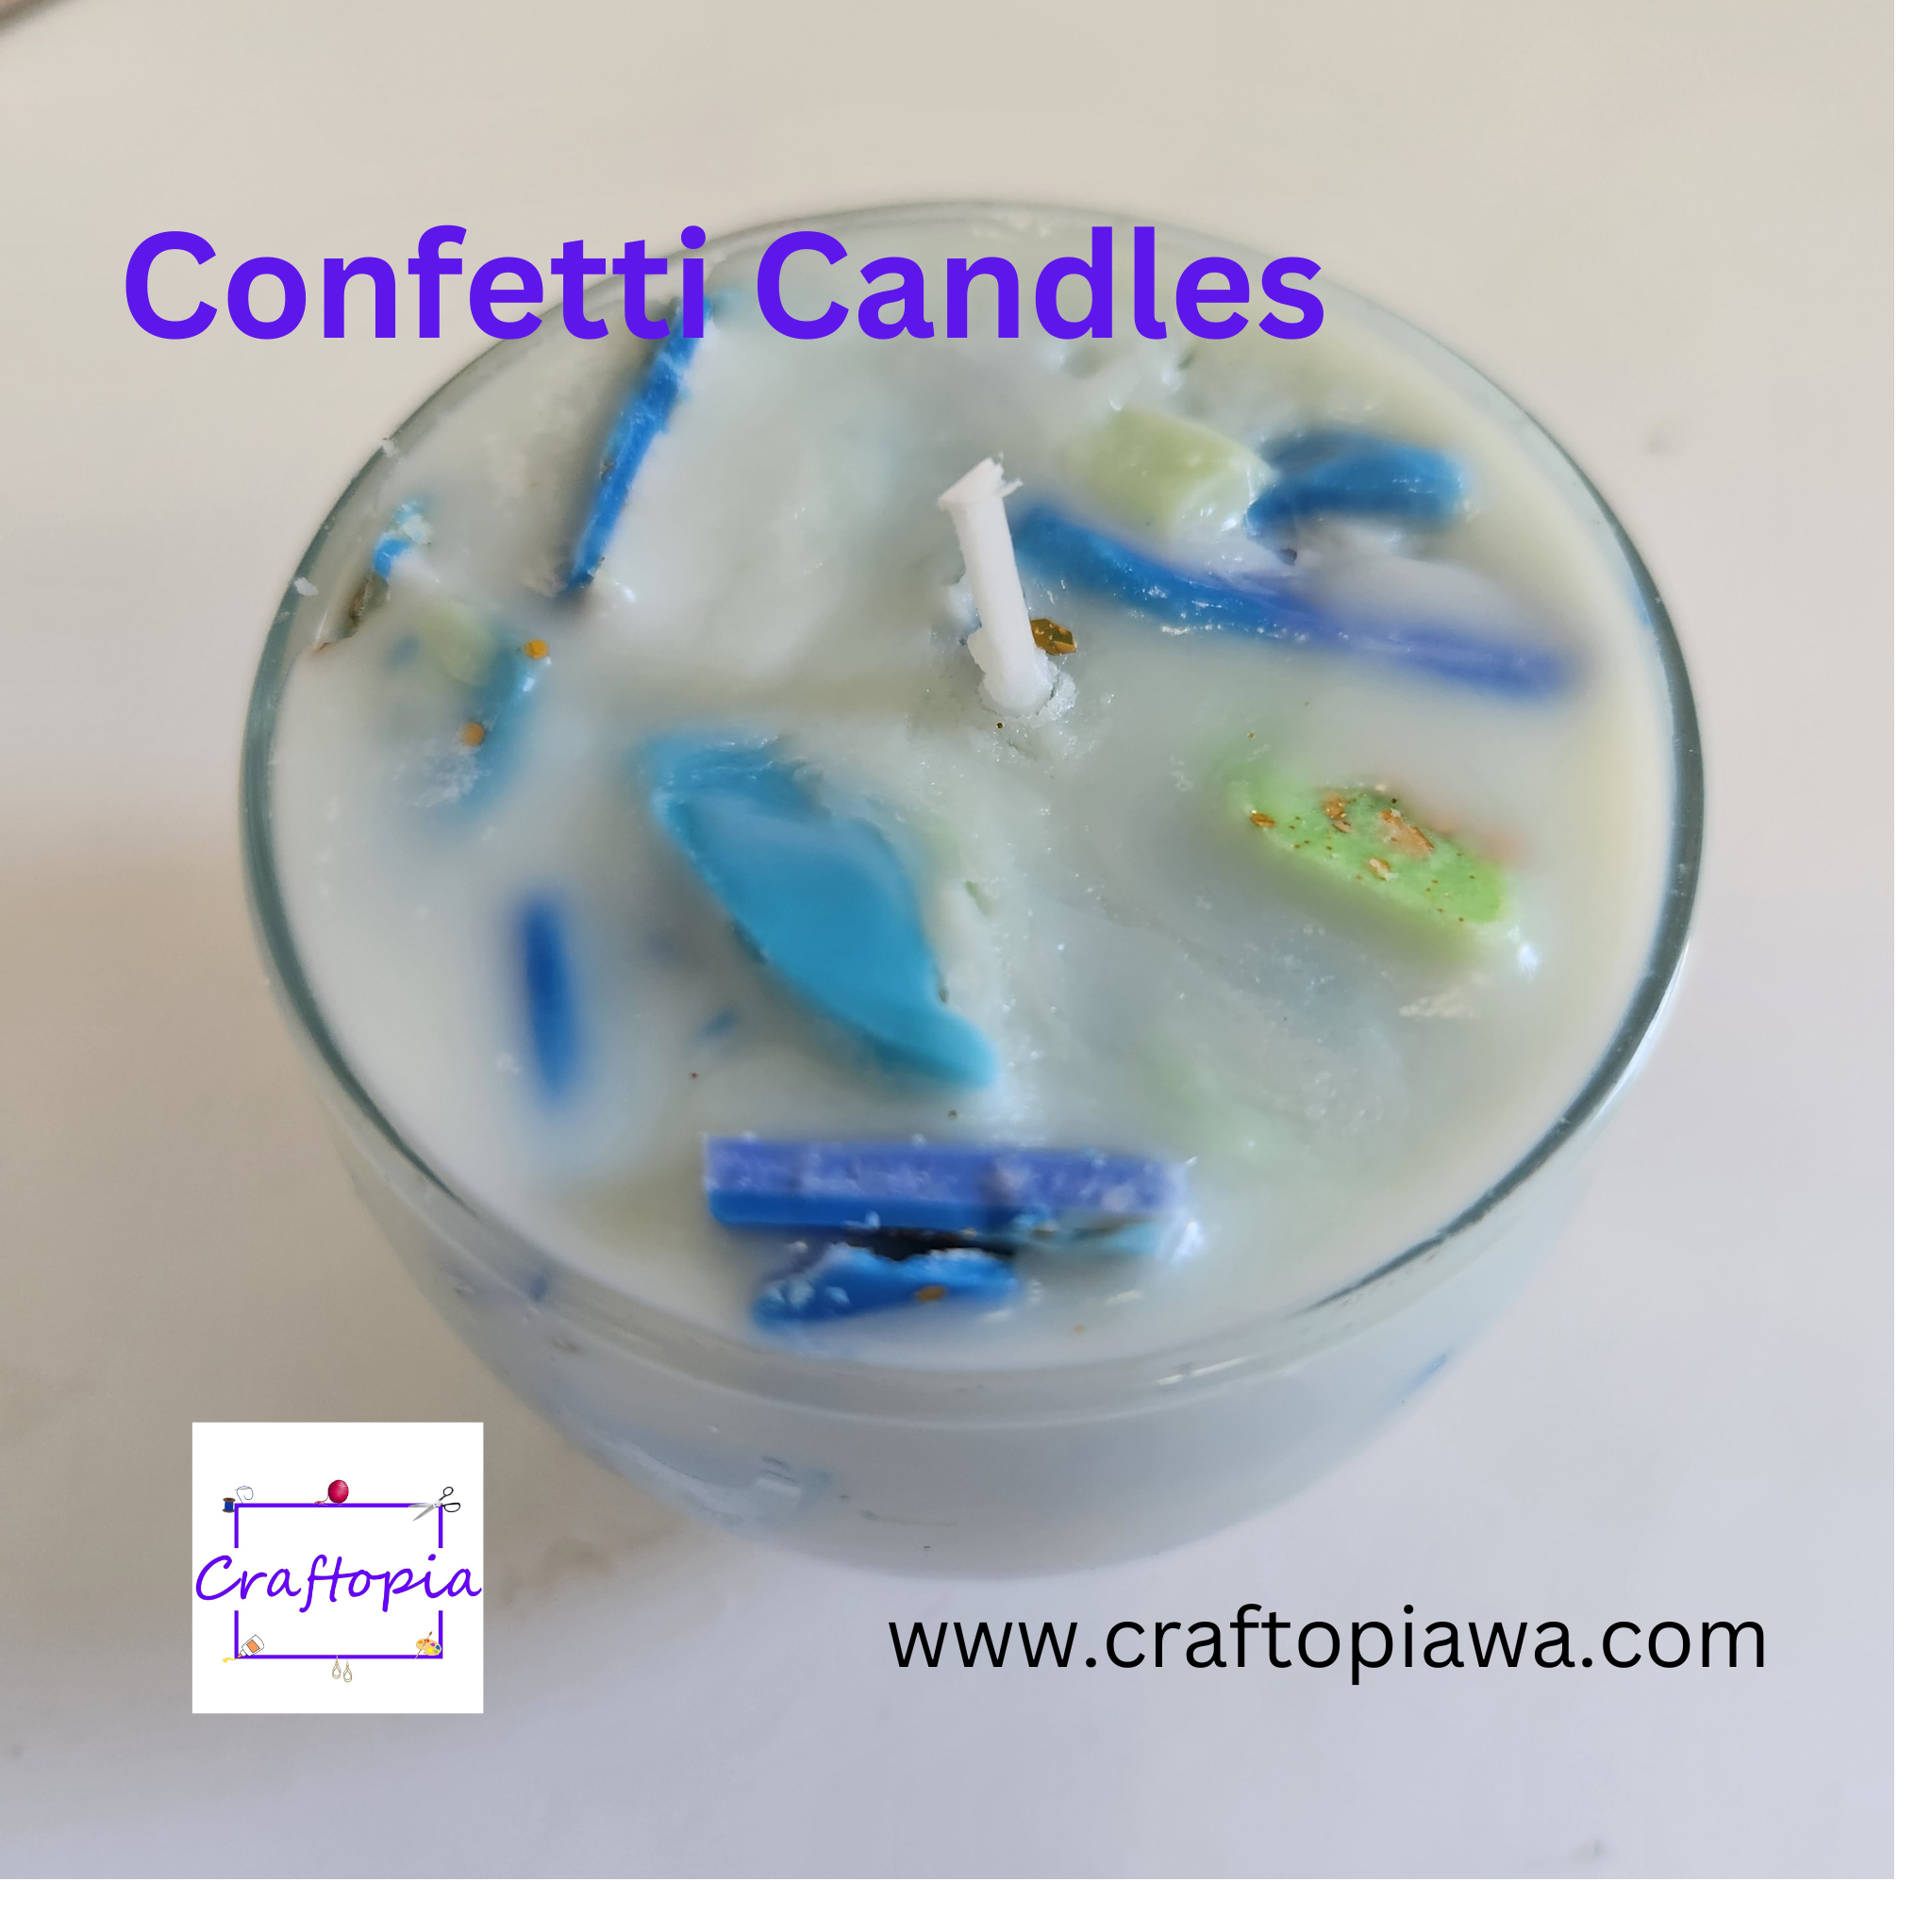 Confetti Candles